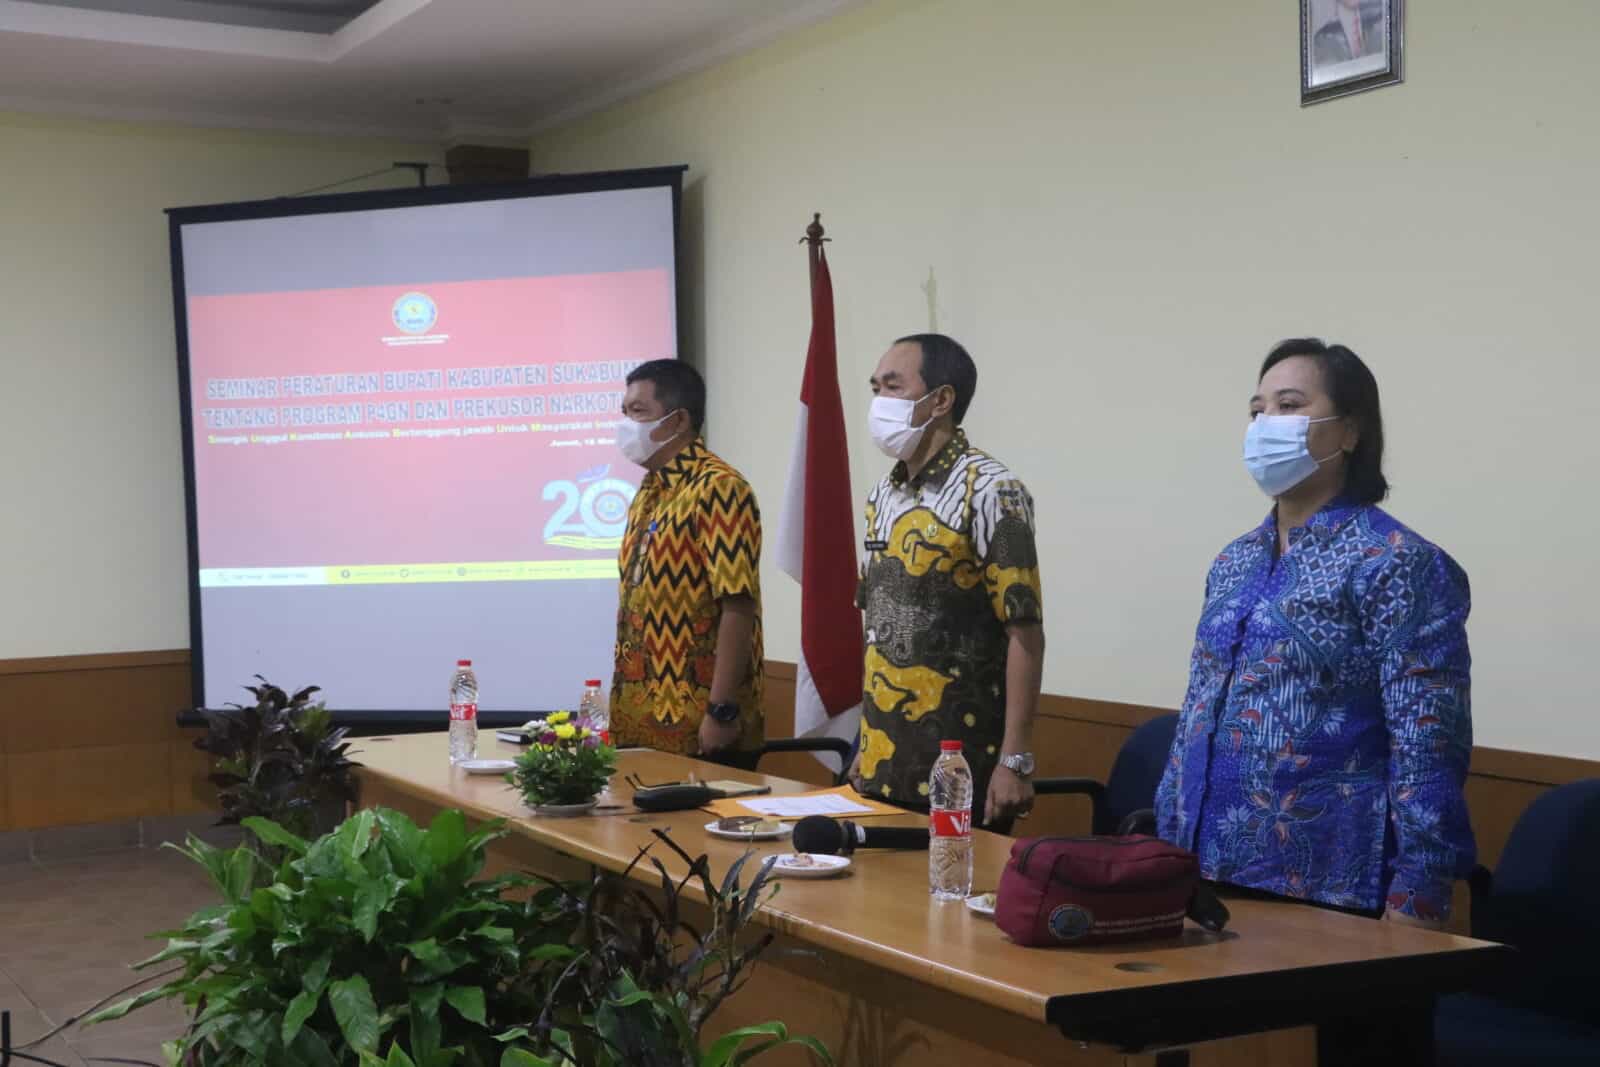 Seminar peraturan Bupati Kabupaten Sukabumi tentang program P4GN dan Prekusor Narkotika